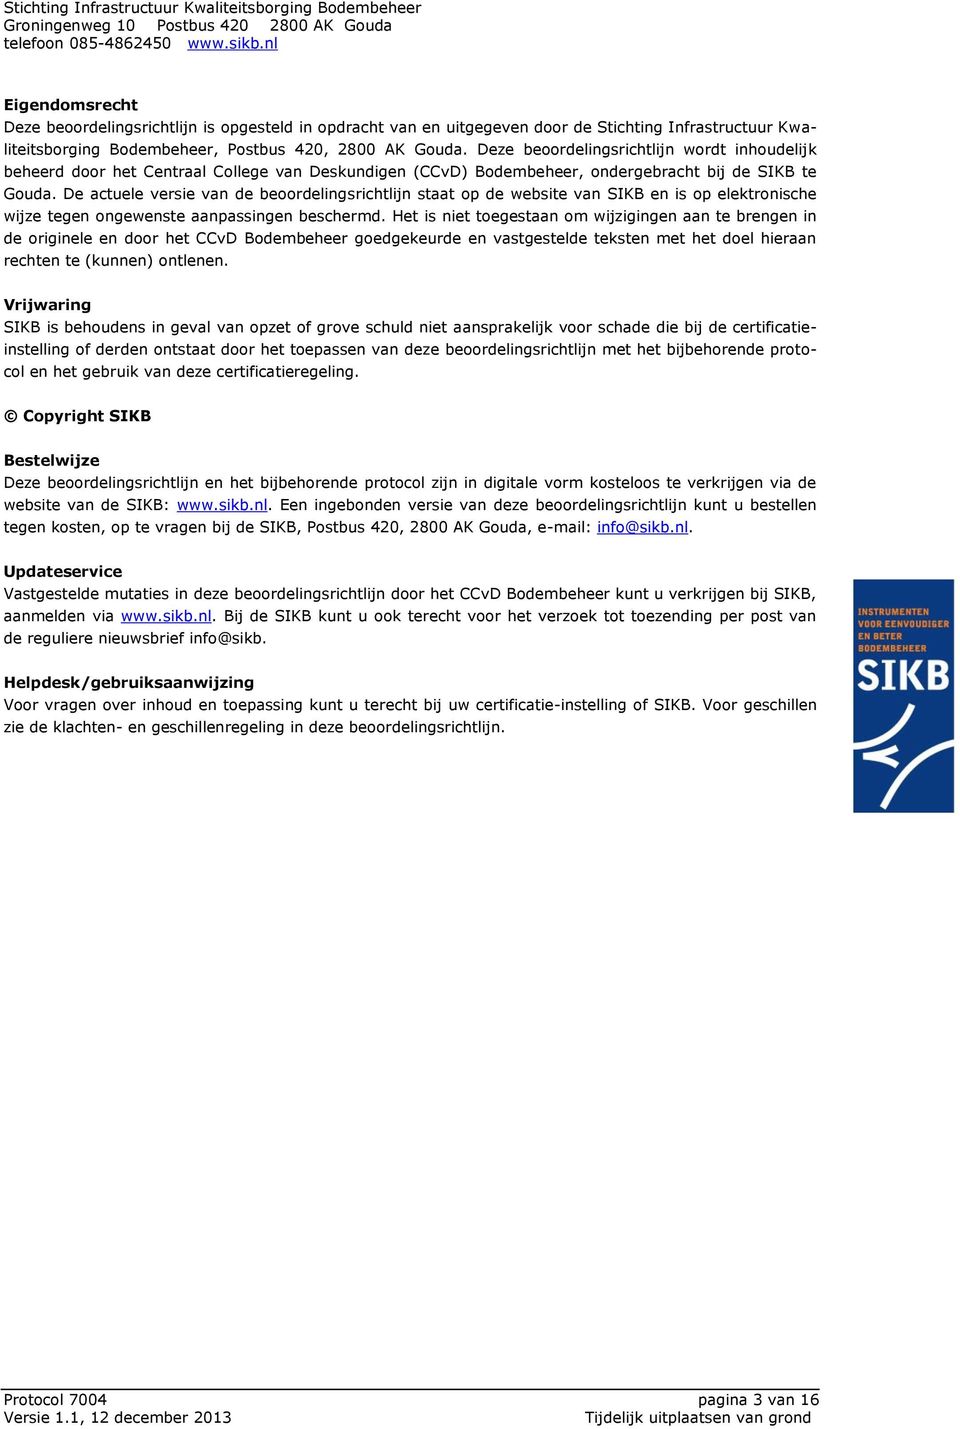 De actuele versie van de beoordelingsrichtlijn staat op de website van SIKB en is op elektronische wijze tegen ongewenste aanpassingen beschermd.